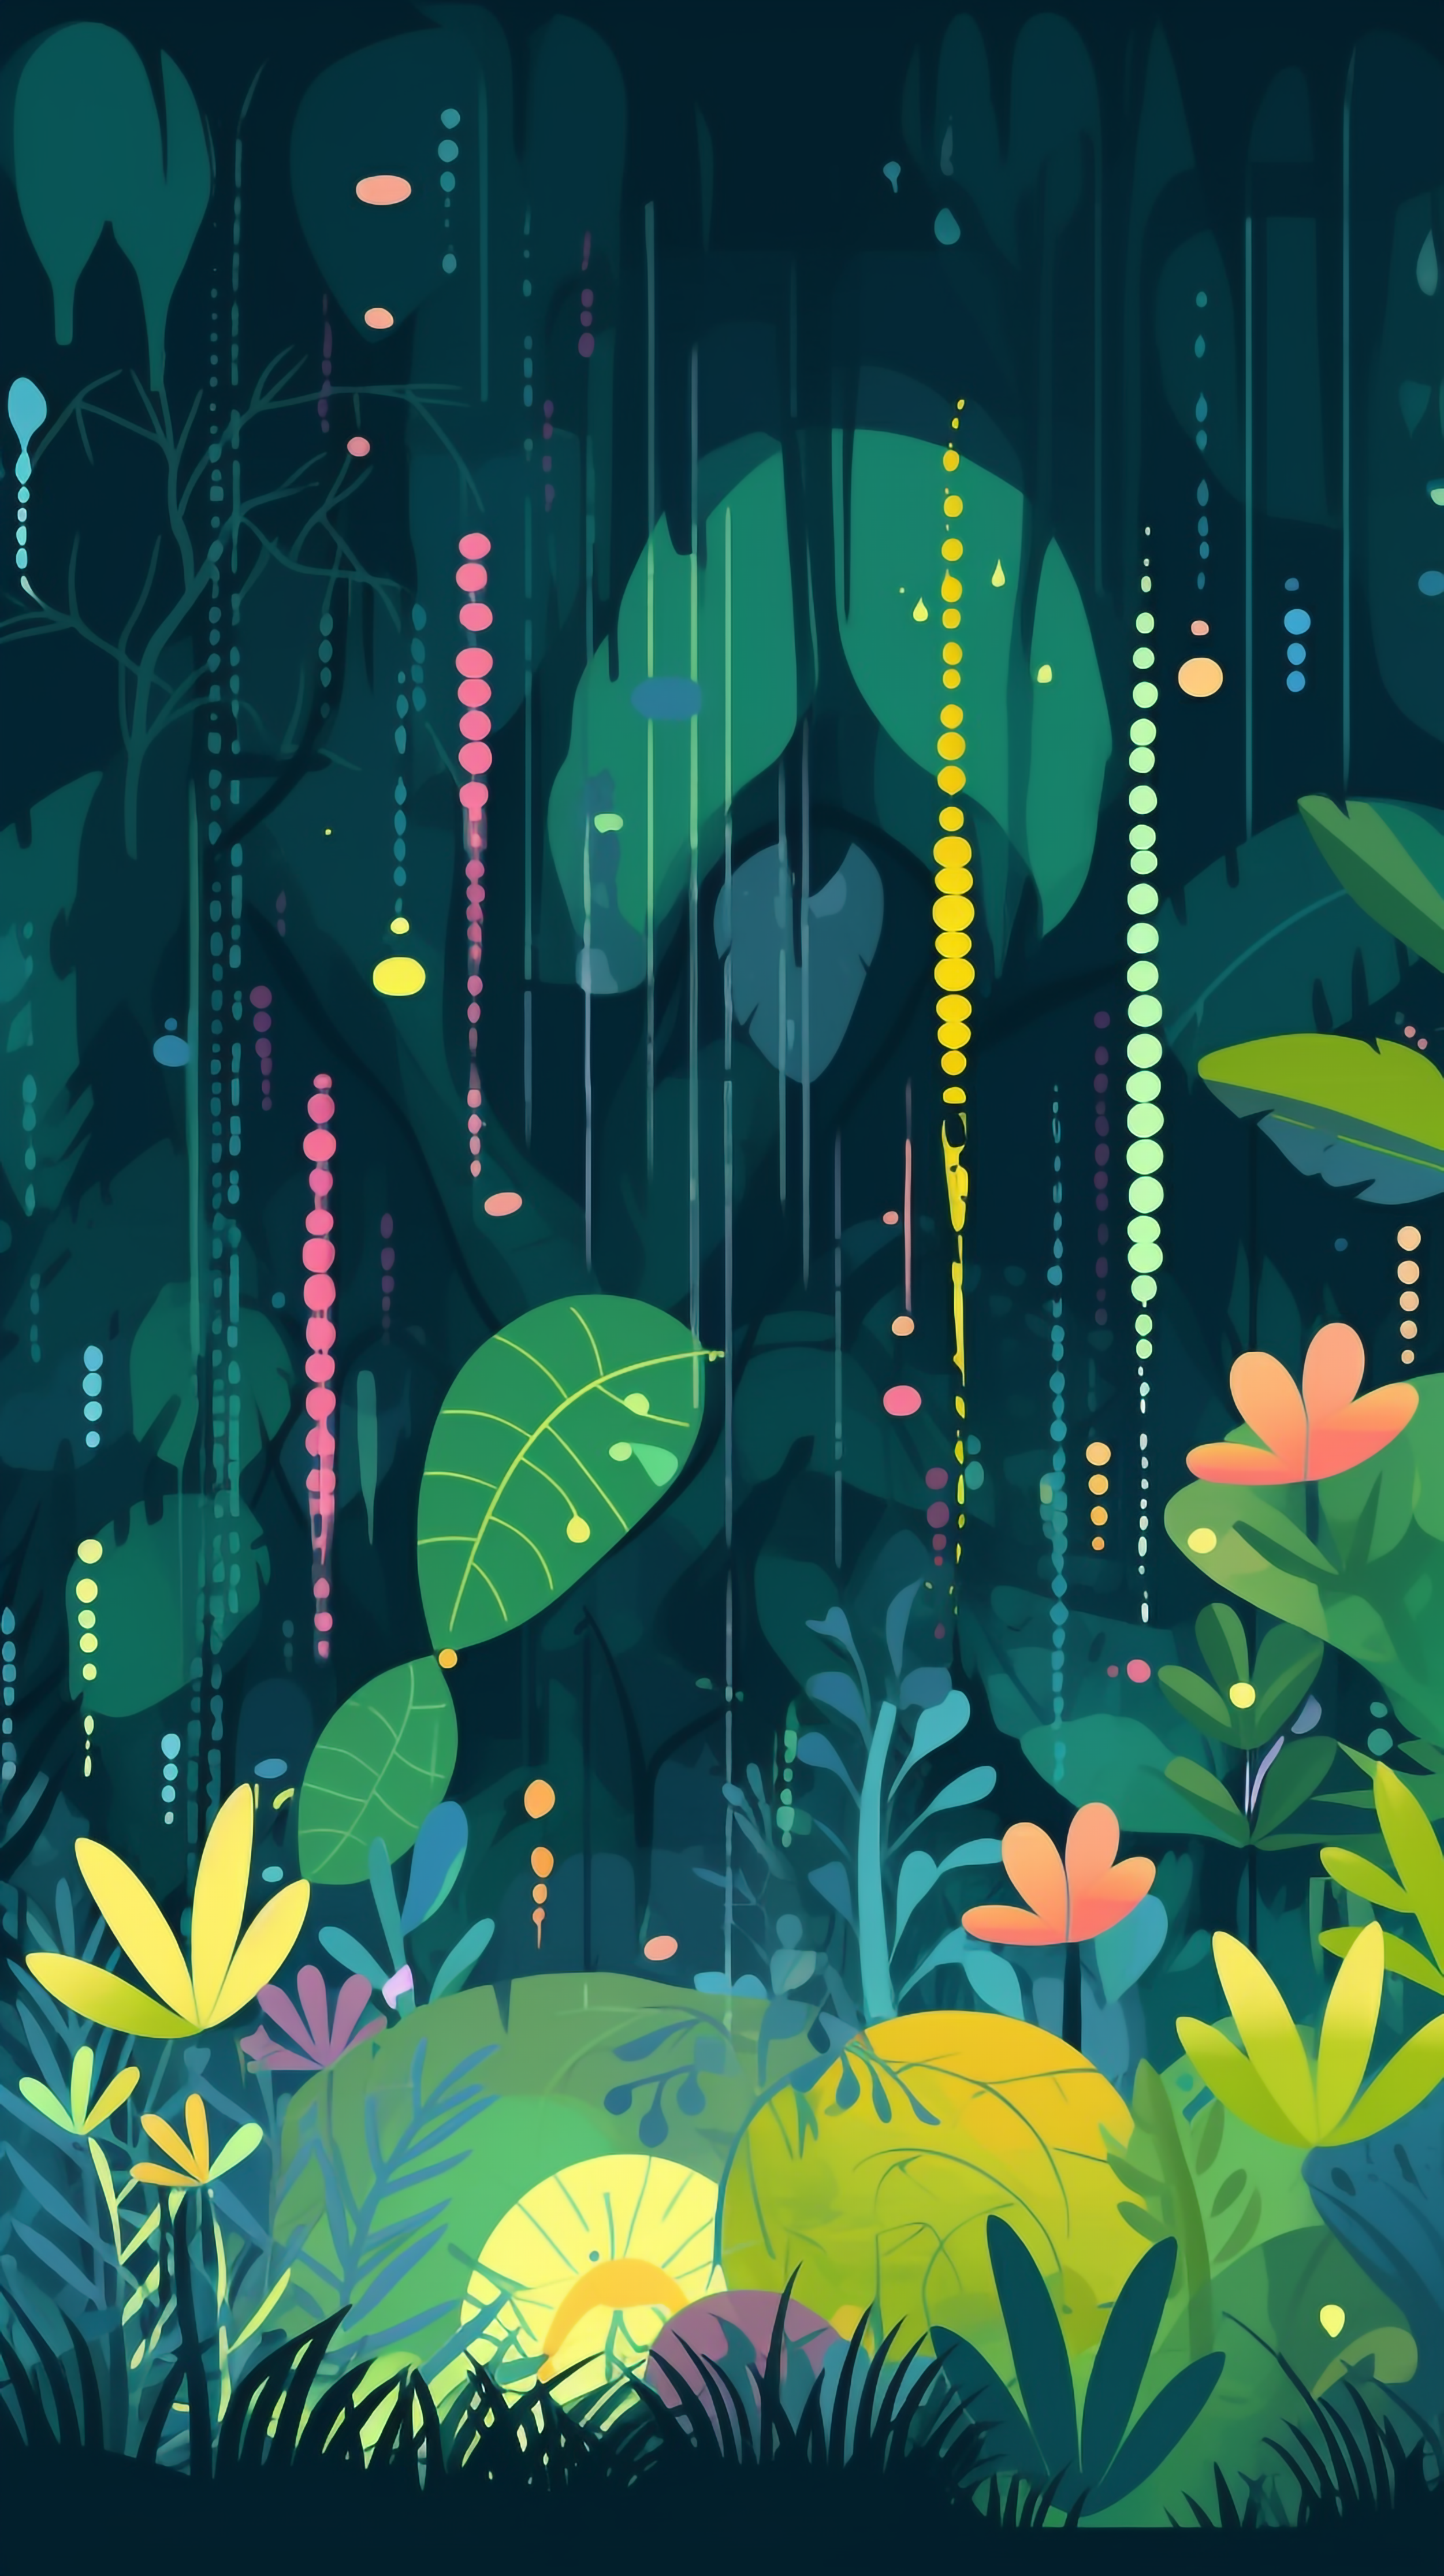 雨珠彩色叶子热带植物森林背景雨中风景图片